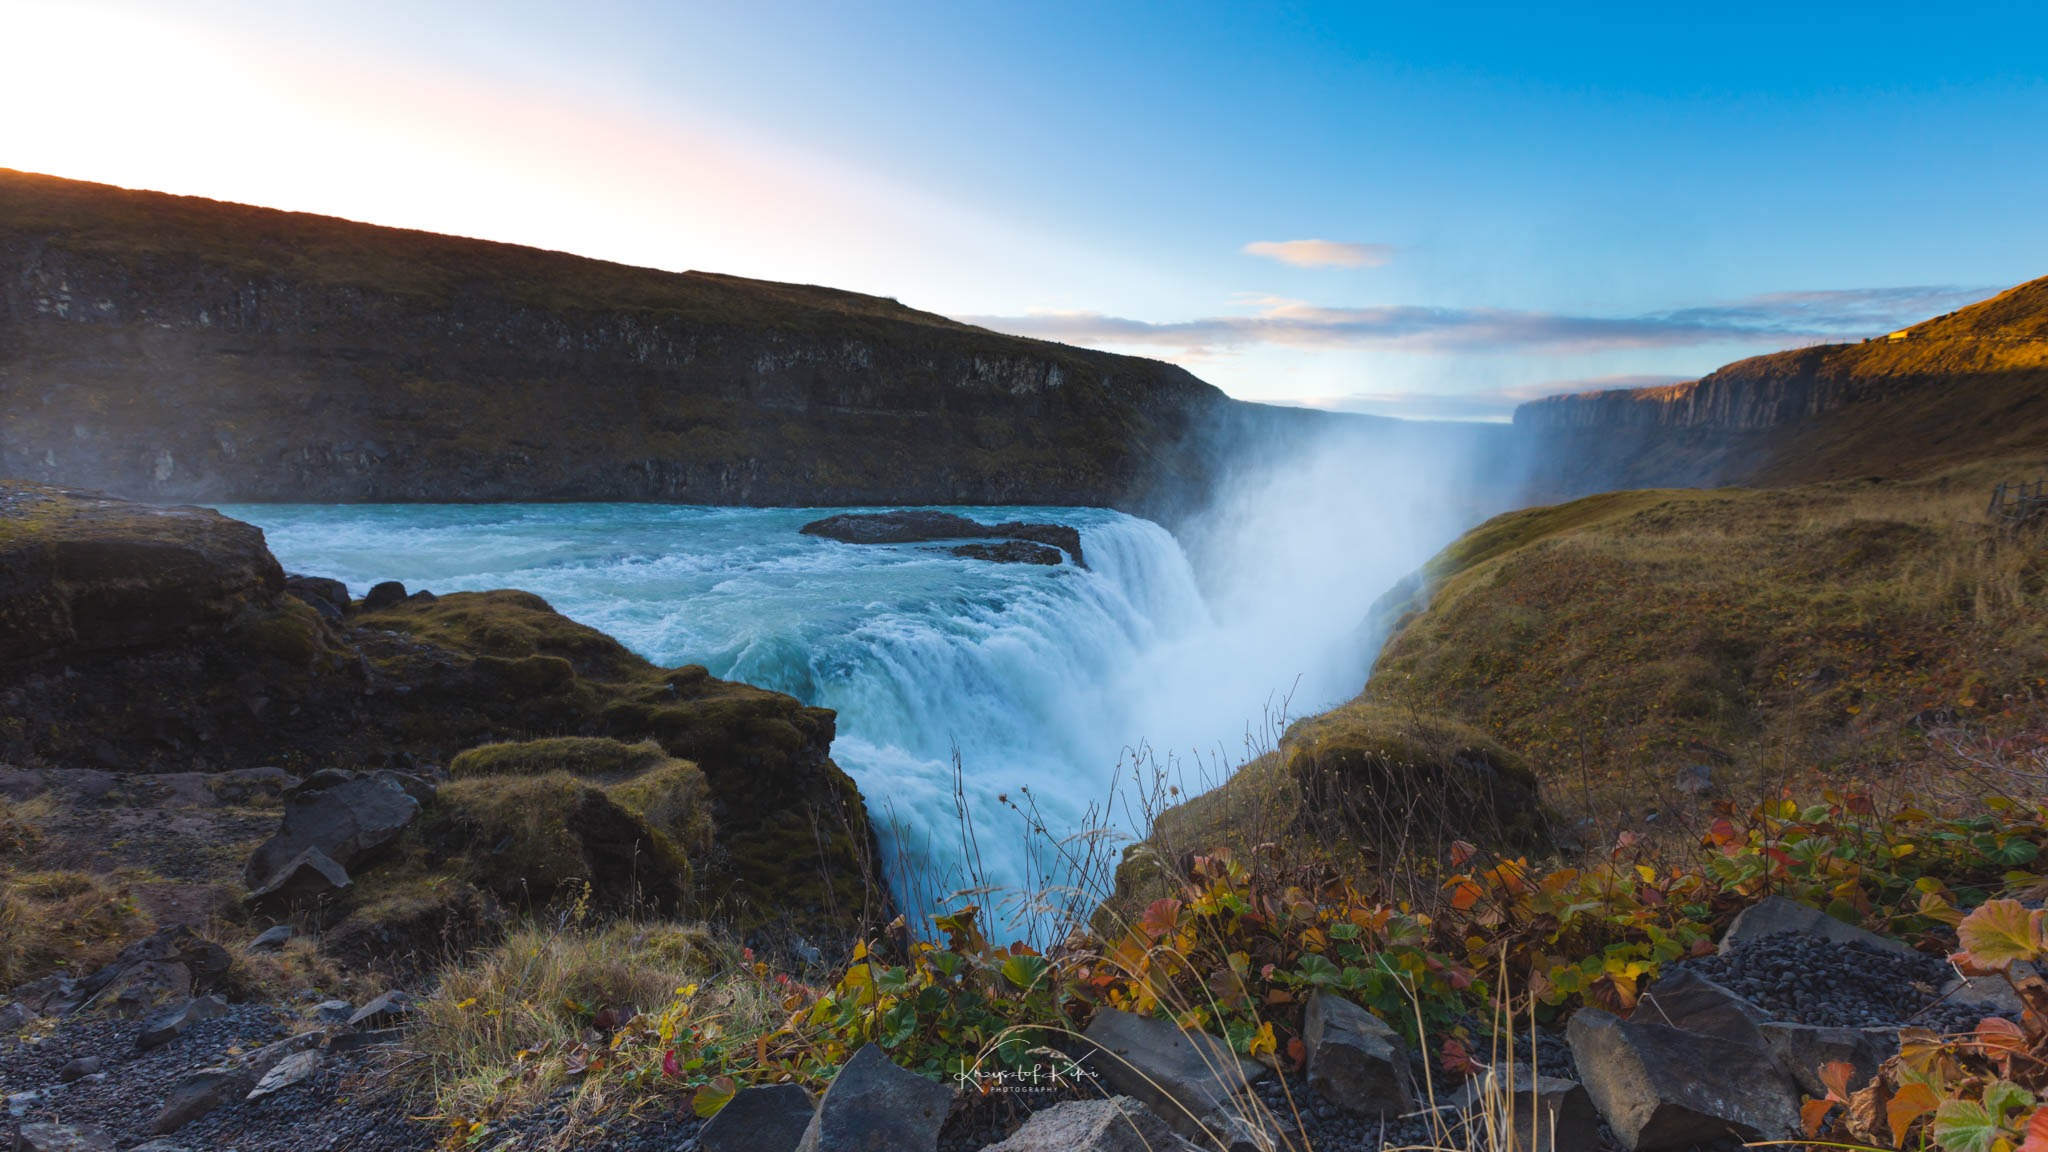 Islandia. Złoty wodospad - Gullfoss